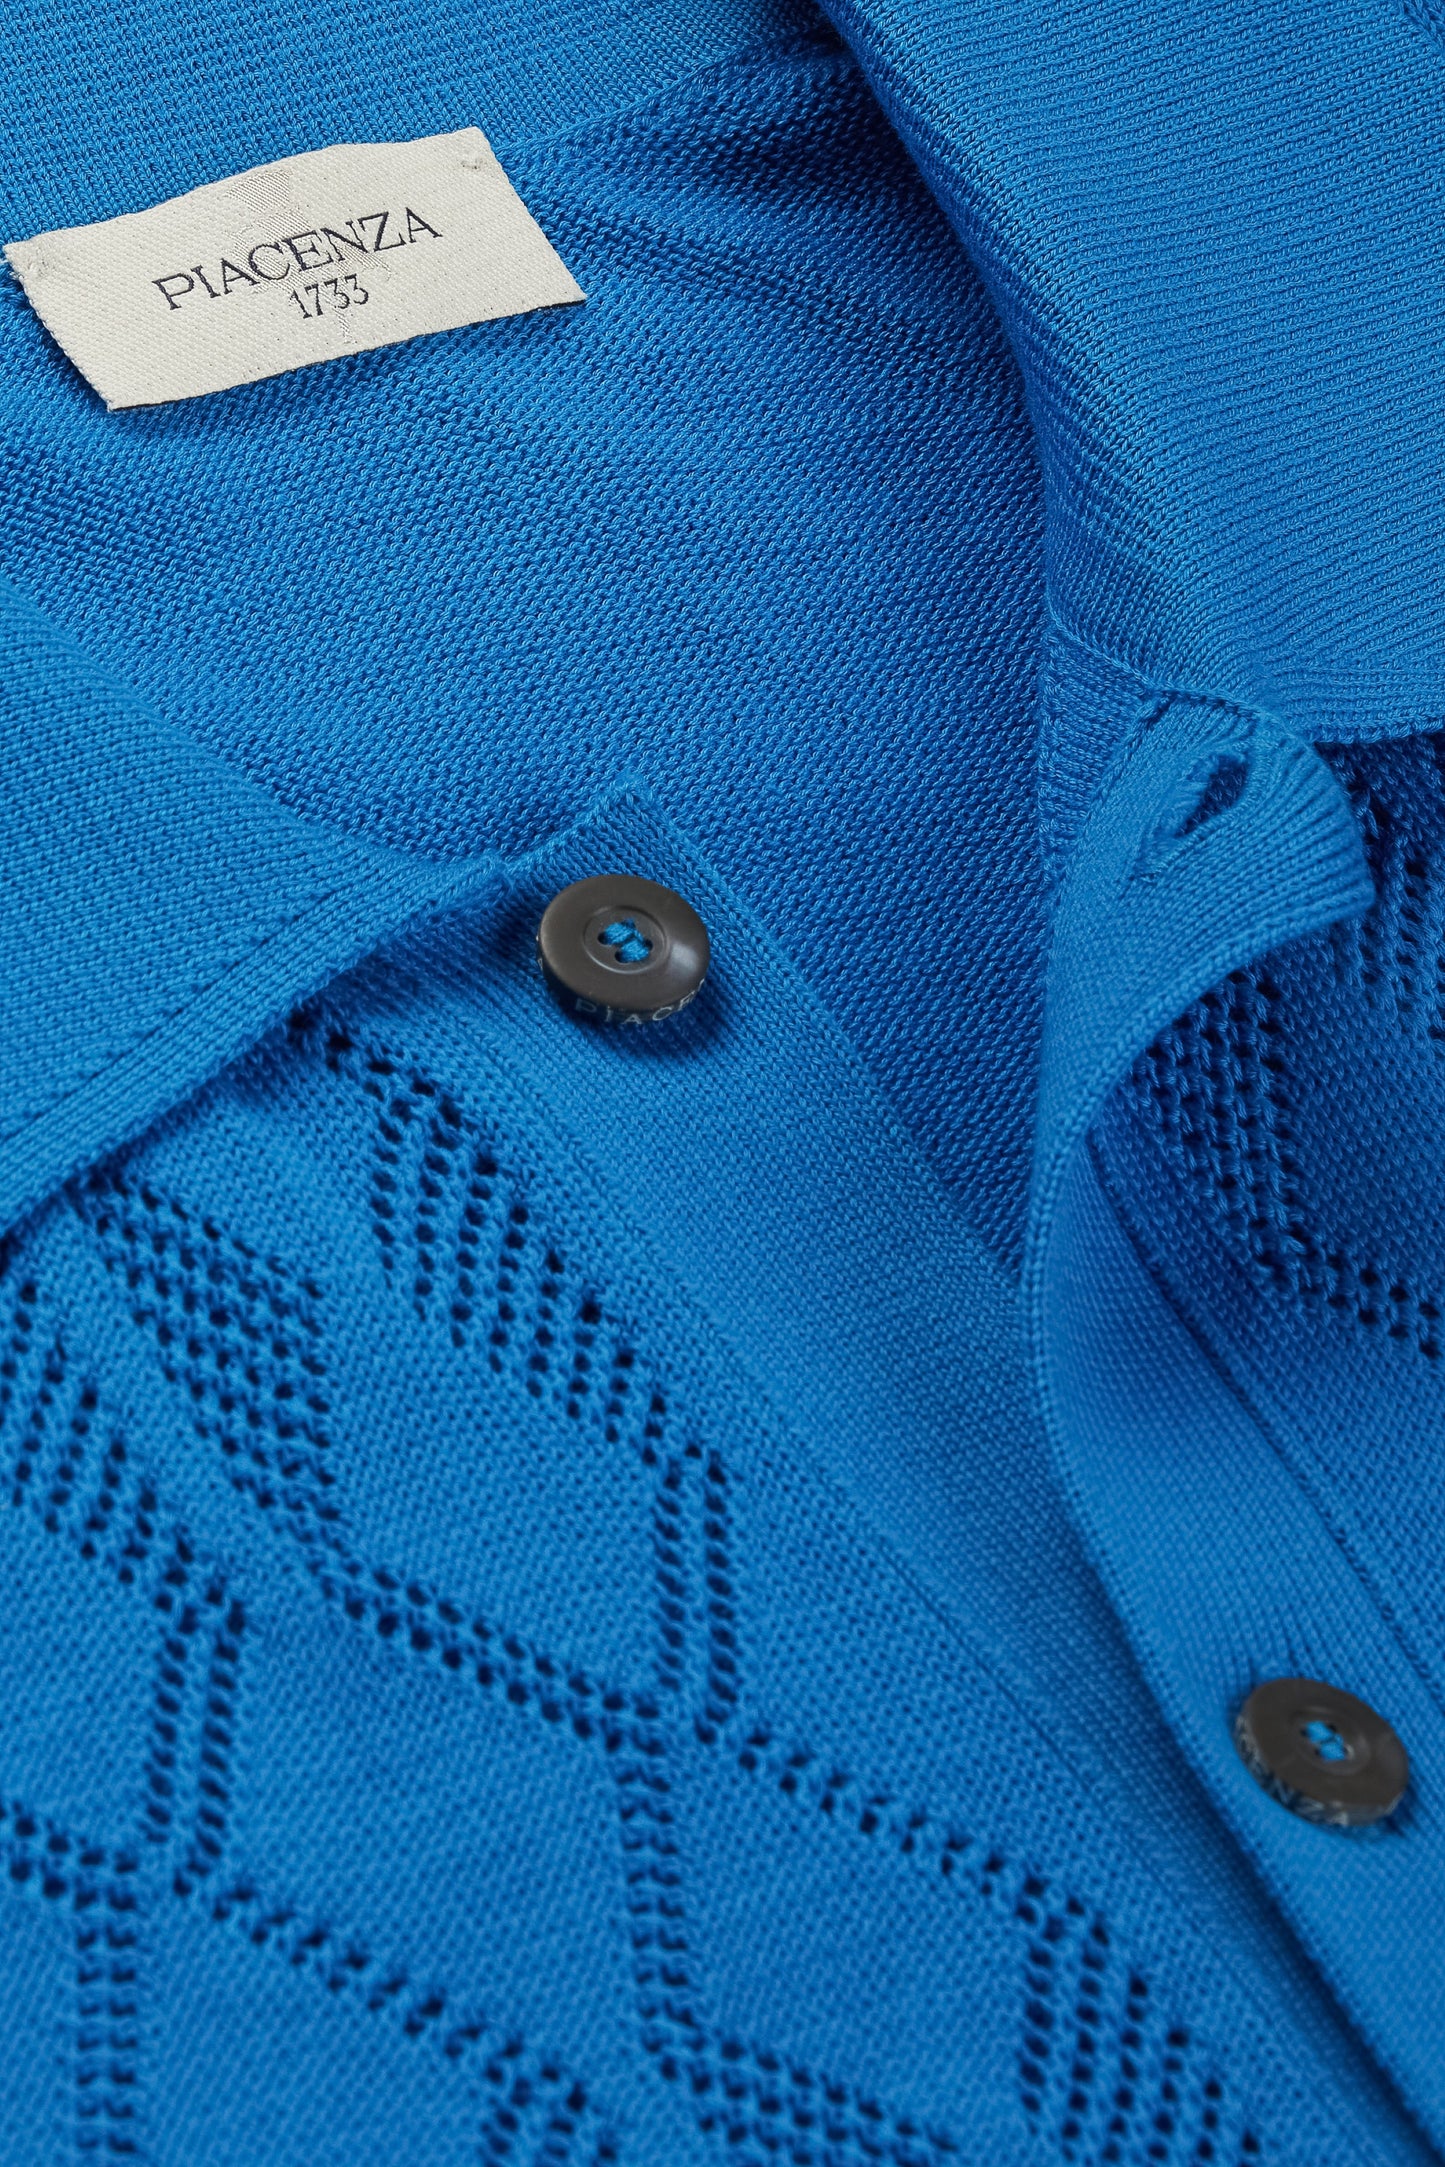 Electric blue crochet short-sleeved shirt